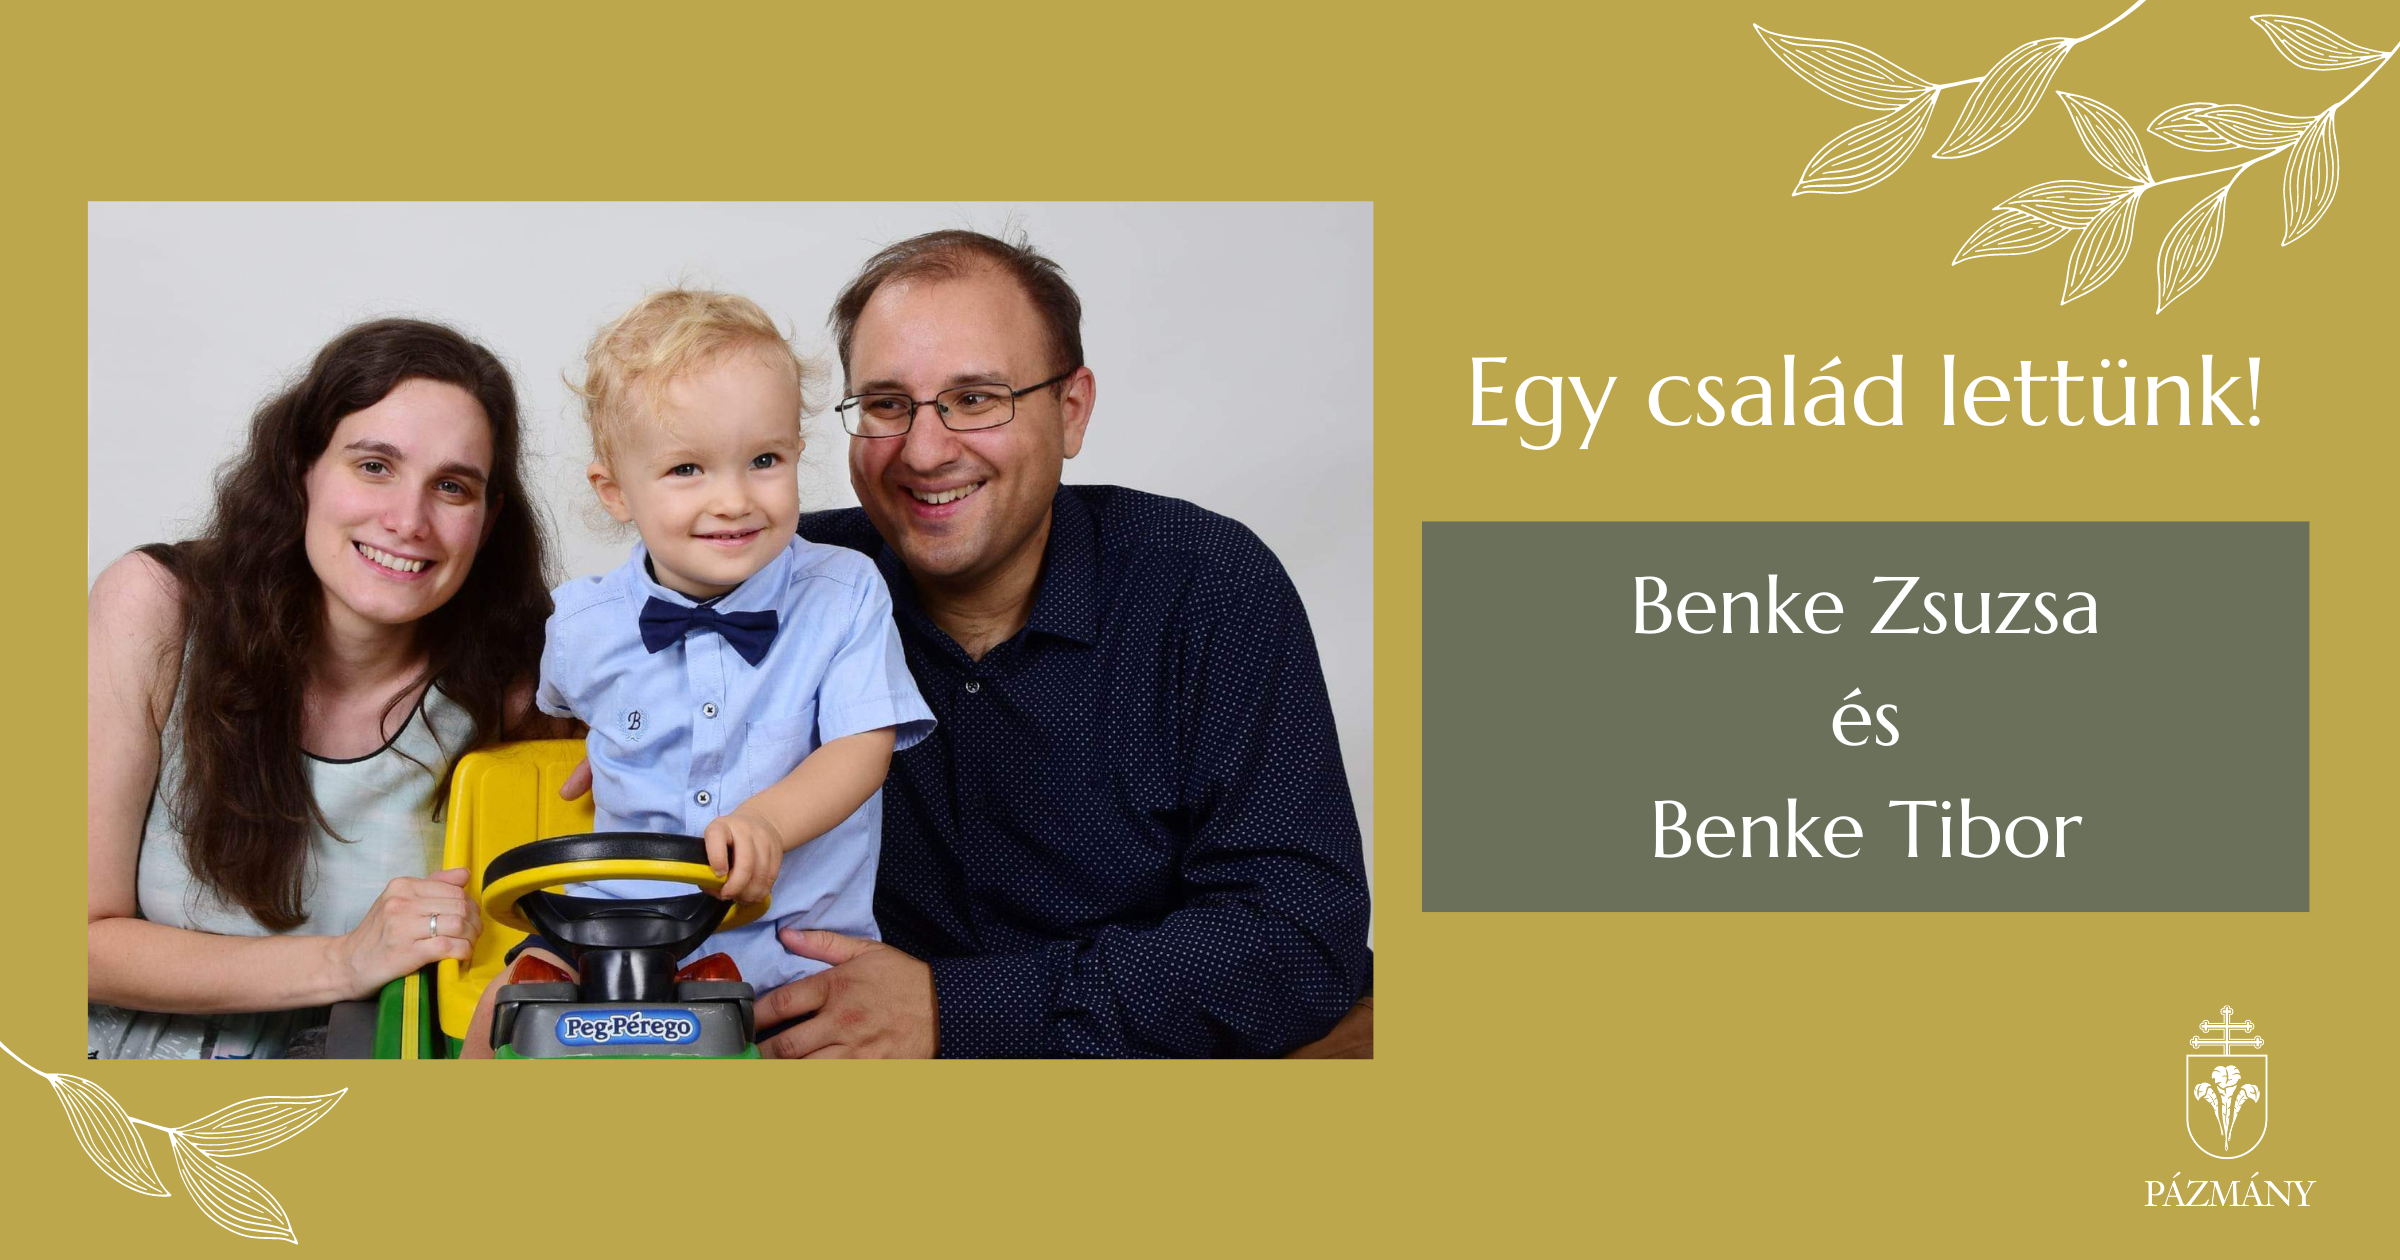 ’Egy család lettünk!’ – beszélgetés Benke Zsuzsával és Benke Tiborral